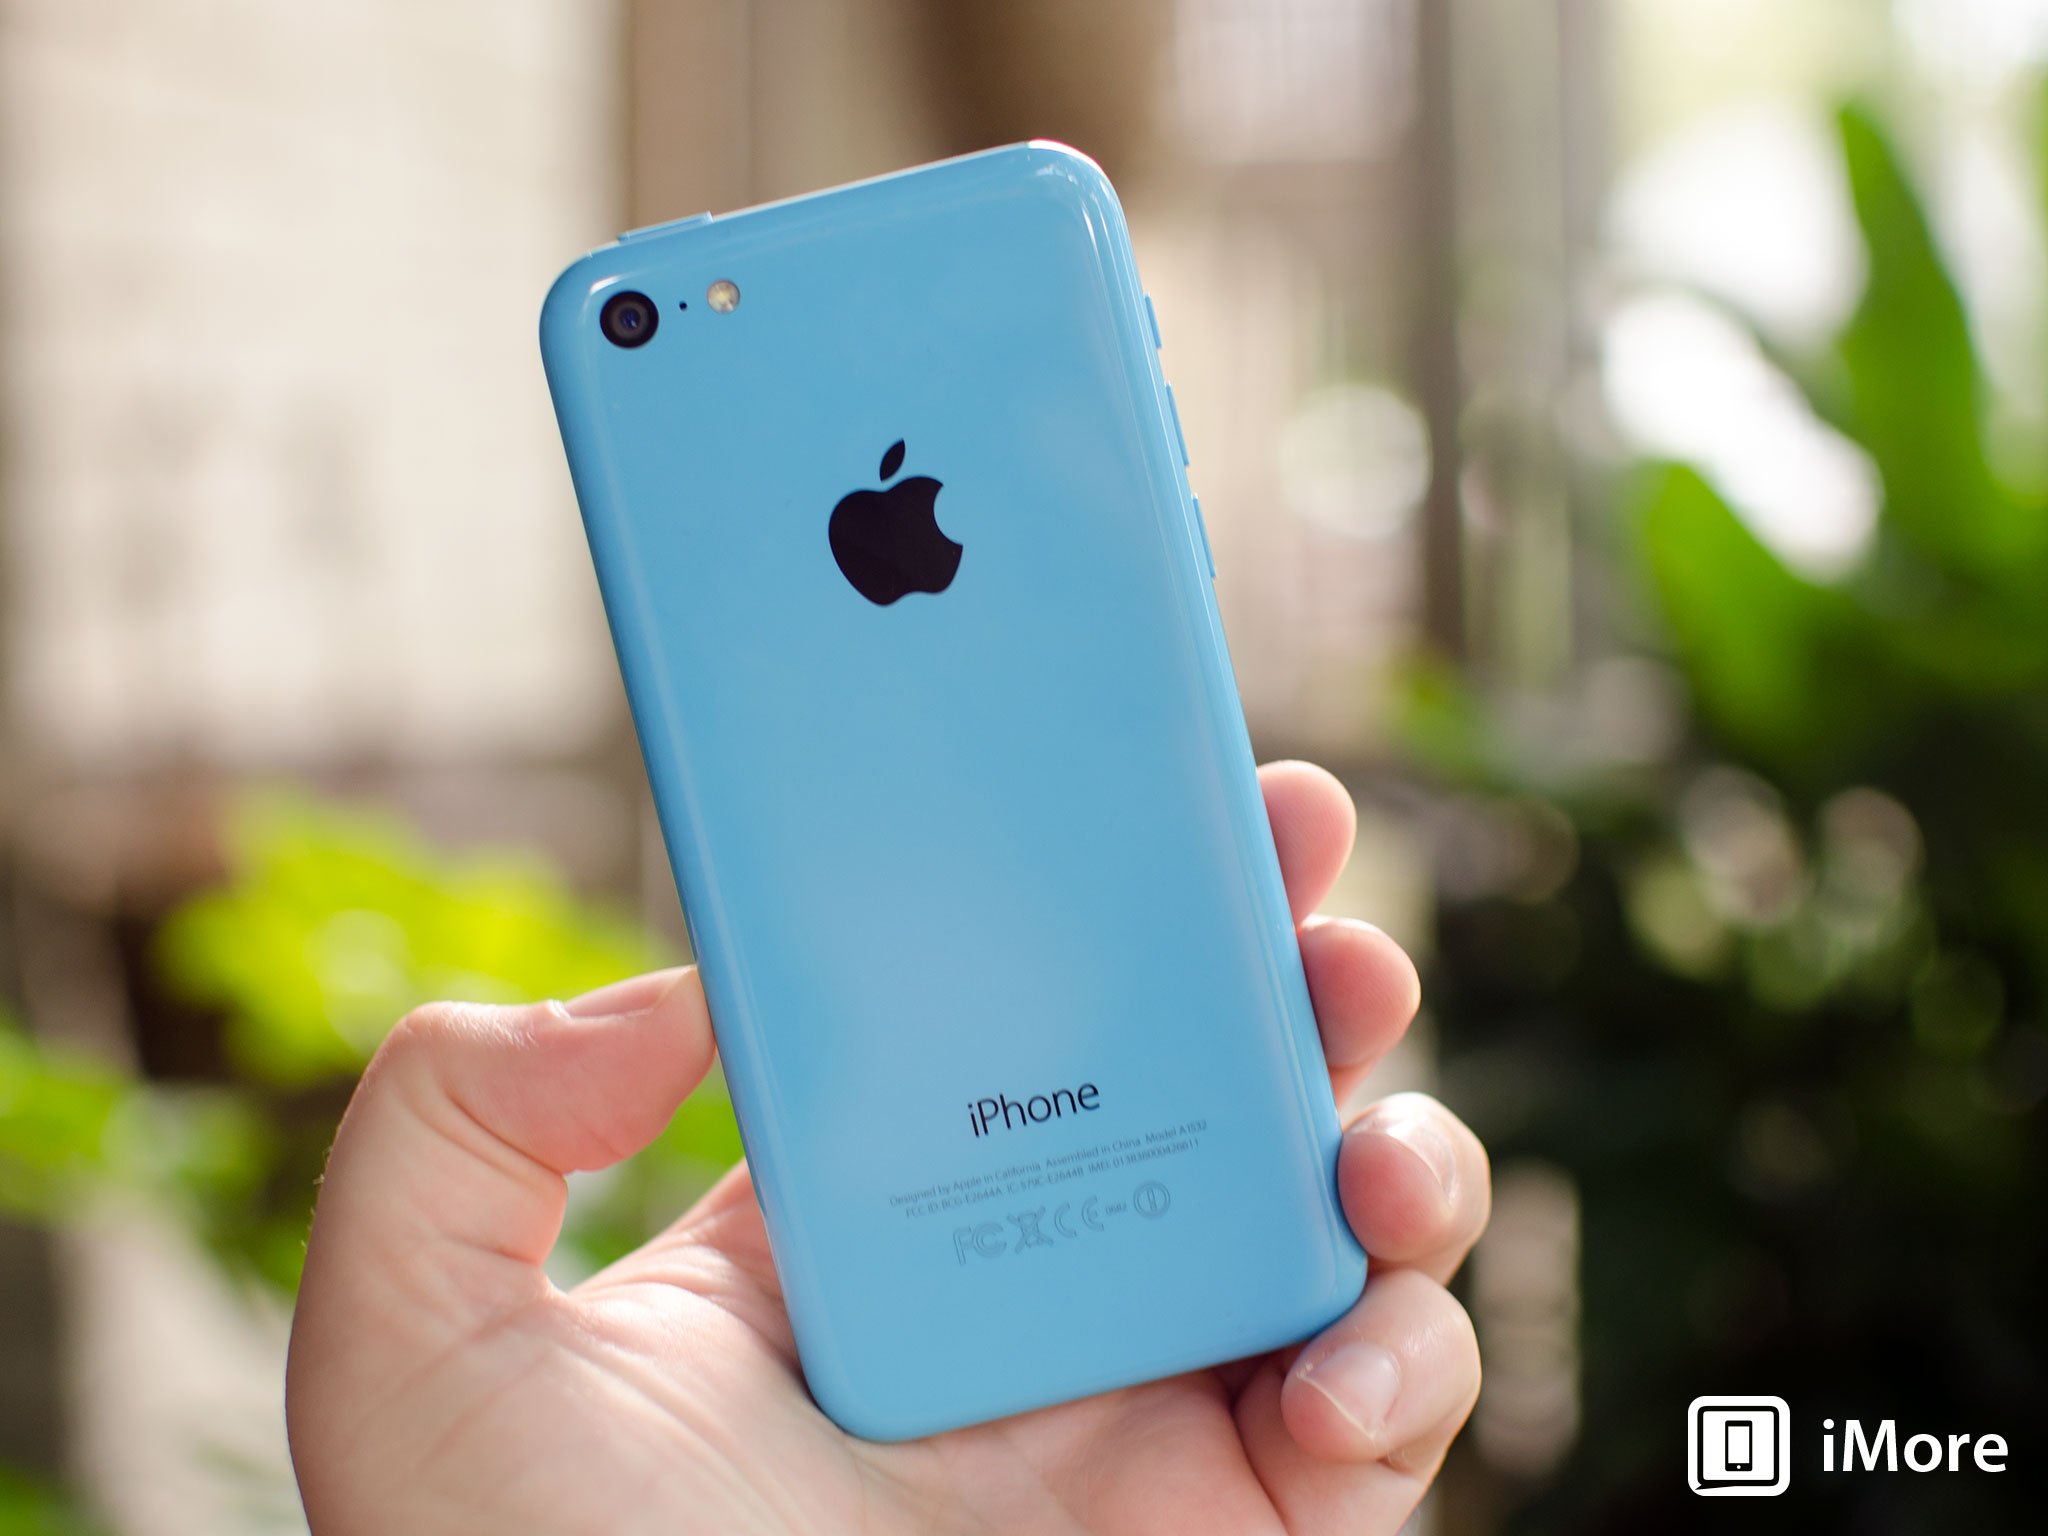 iphone 5 wallpaper blue